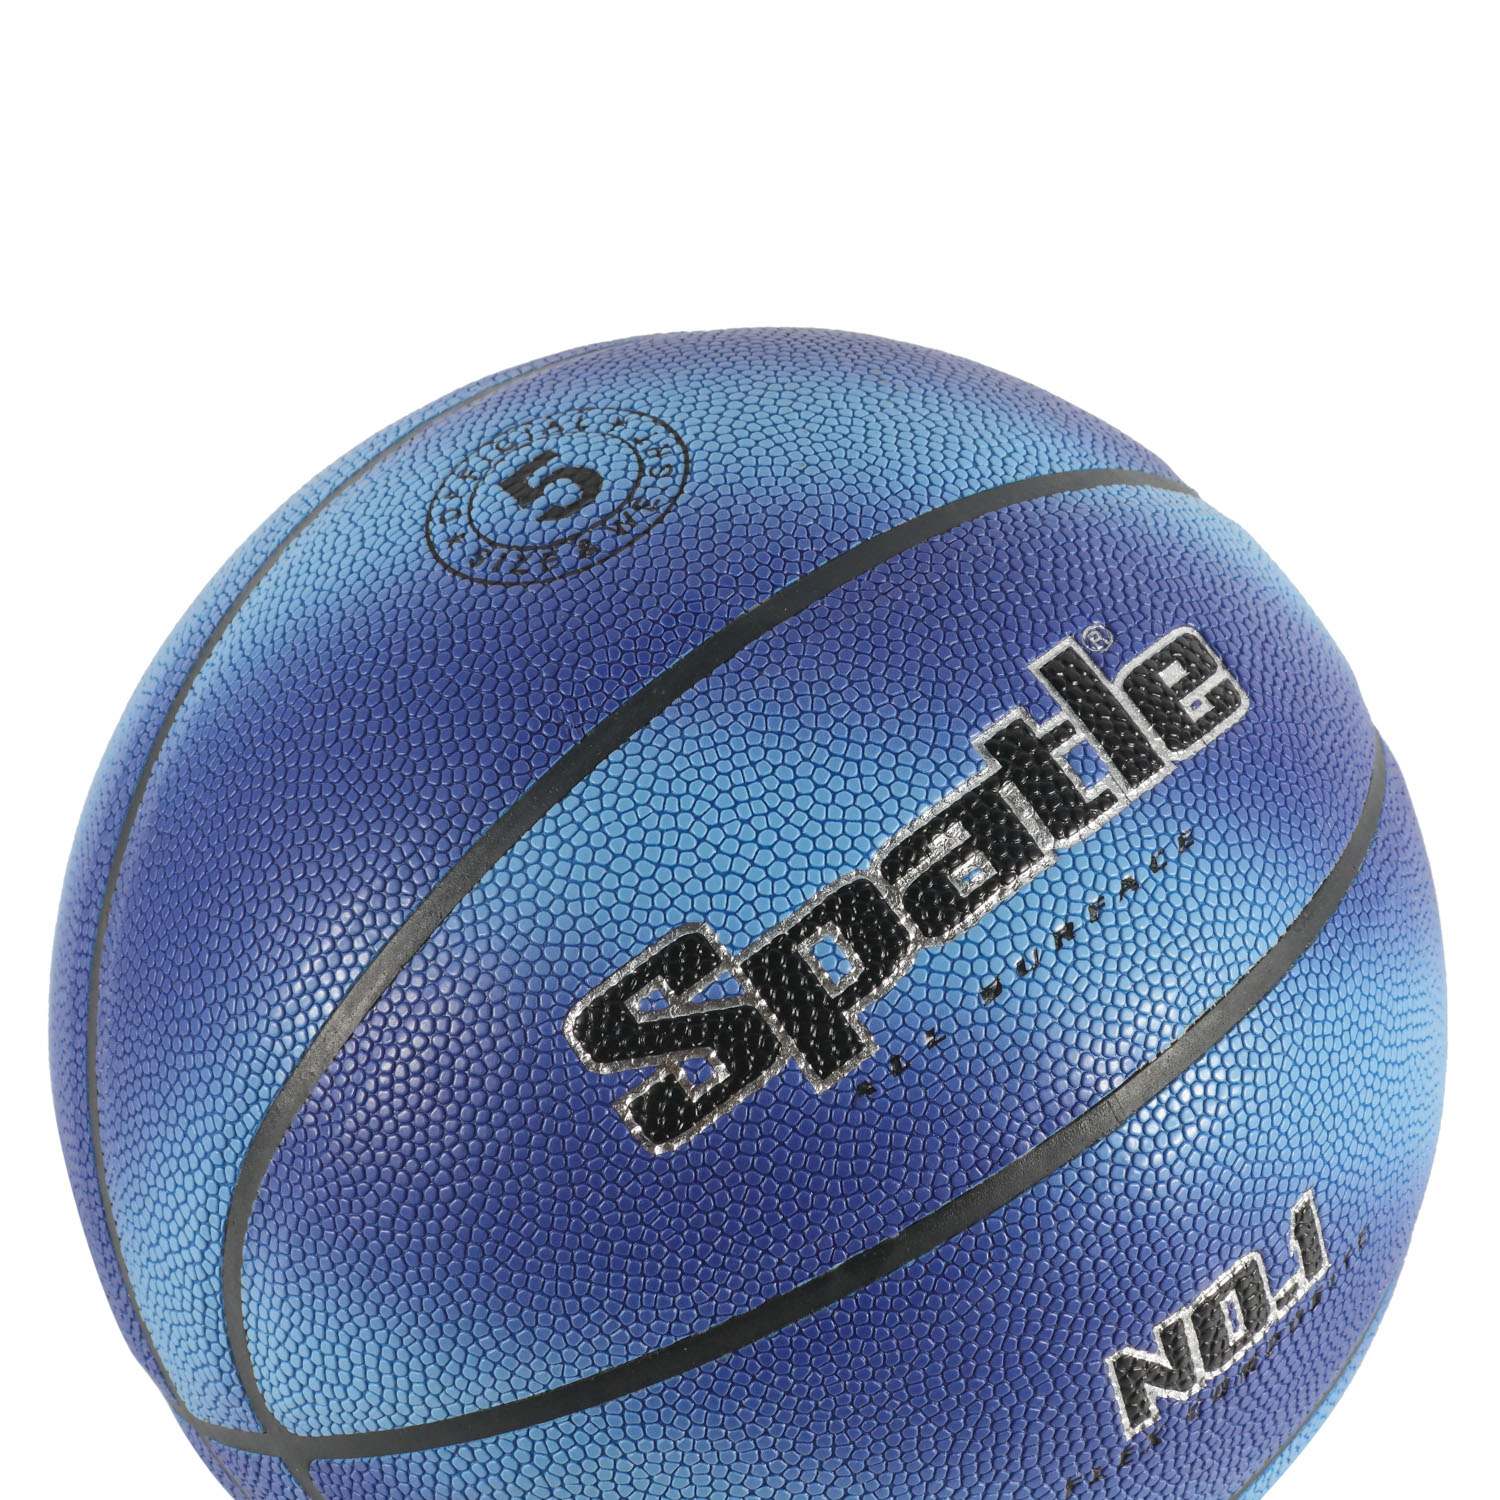 Balón de baloncesto laminado de PVC de tamaño oficial en marrón para jugar en interiores y exteriores